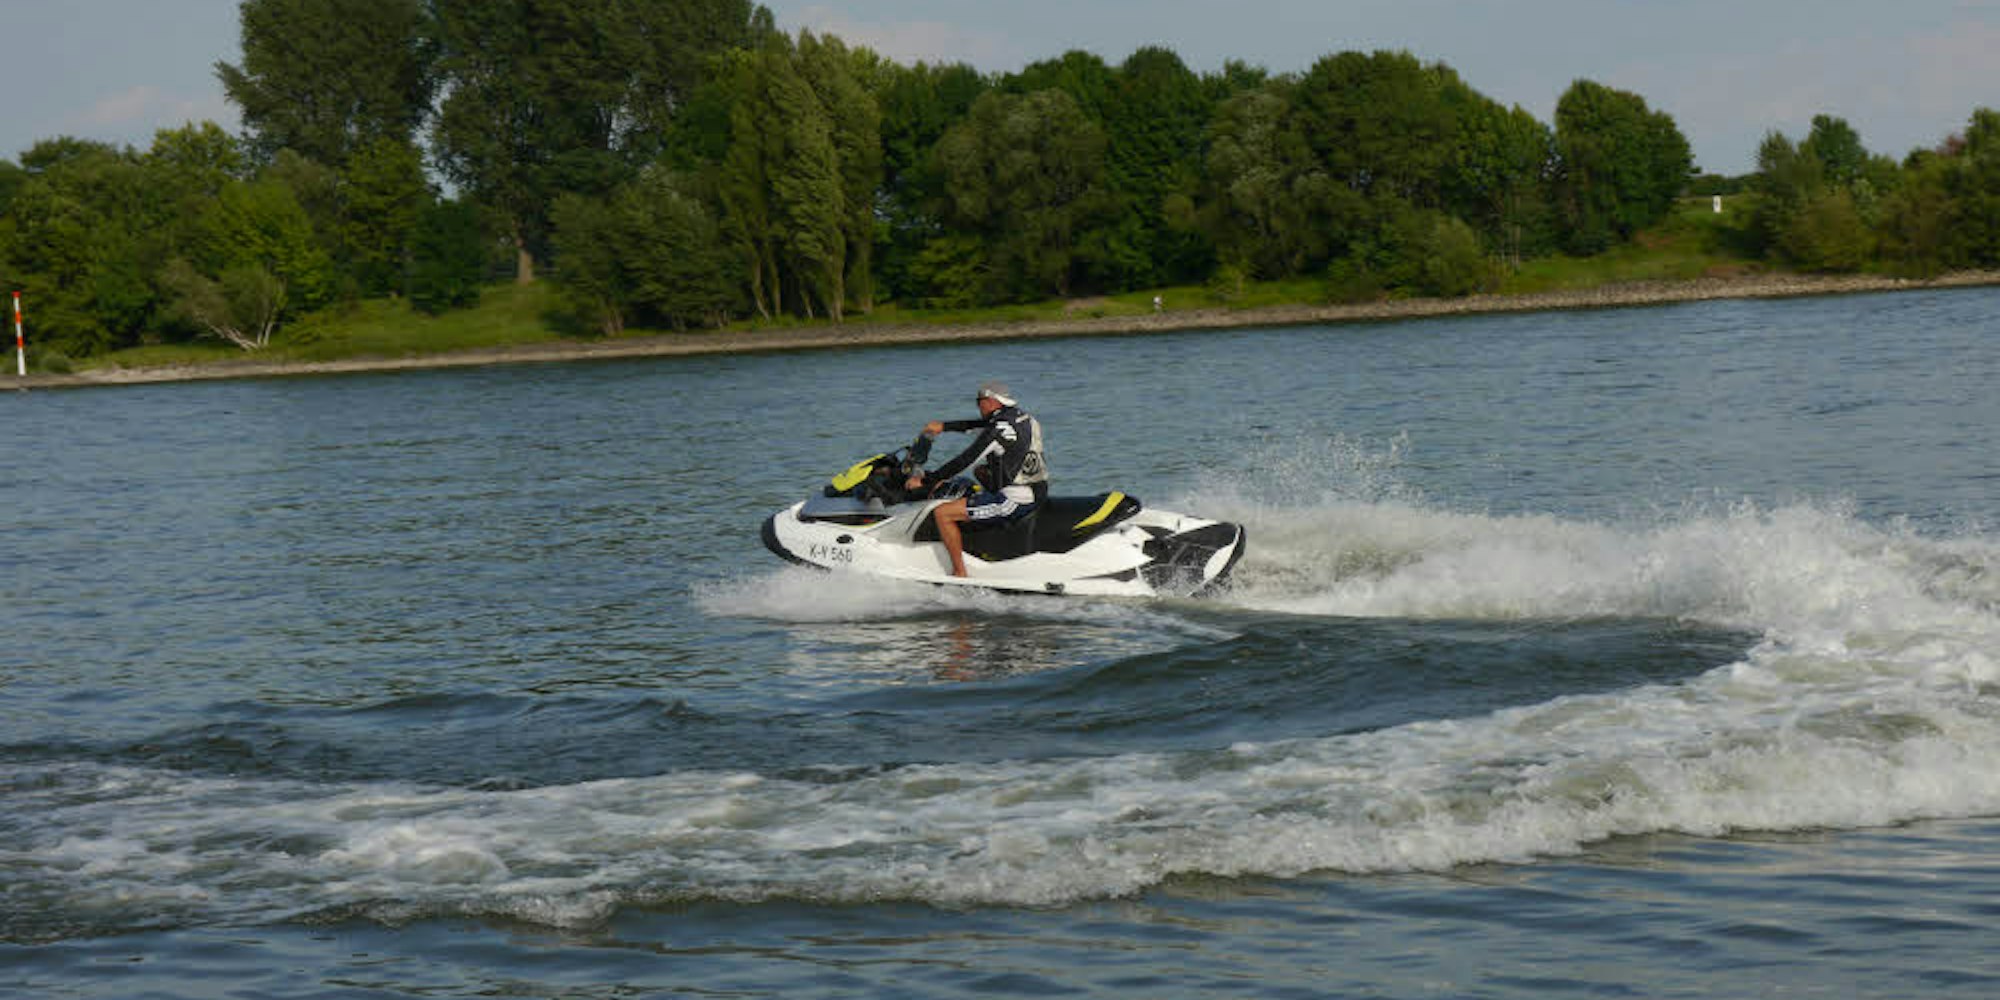 Mehr als 100 Stundenkilometer können die Jetski-Fahrer auf dem Wasser erreichen.